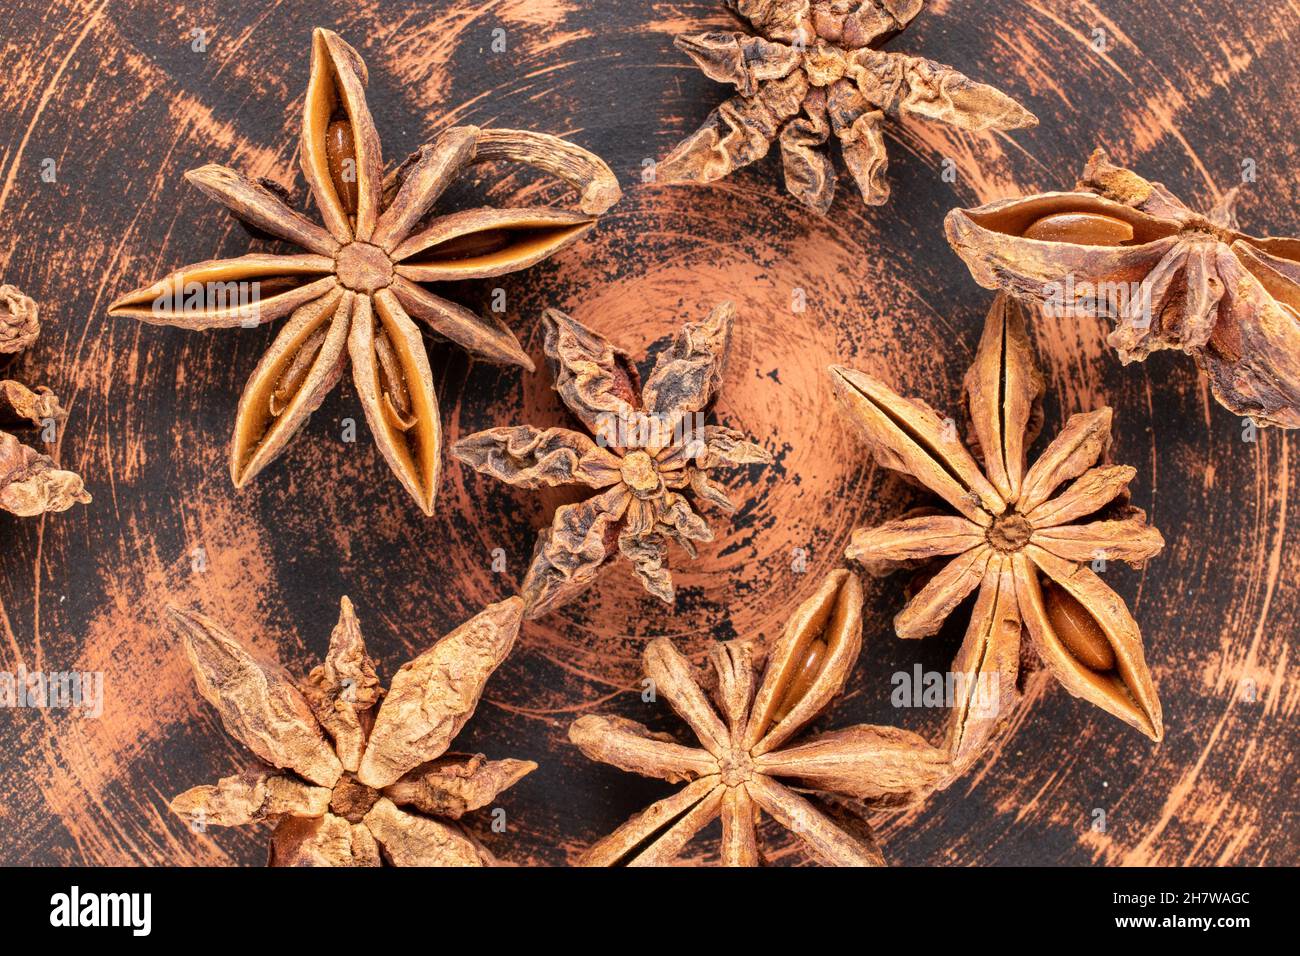 Mehrere Sterne von trocken duftendem Sternanisgestein auf einer Tonplatte, Nahaufnahme, Draufsicht. Stockfoto